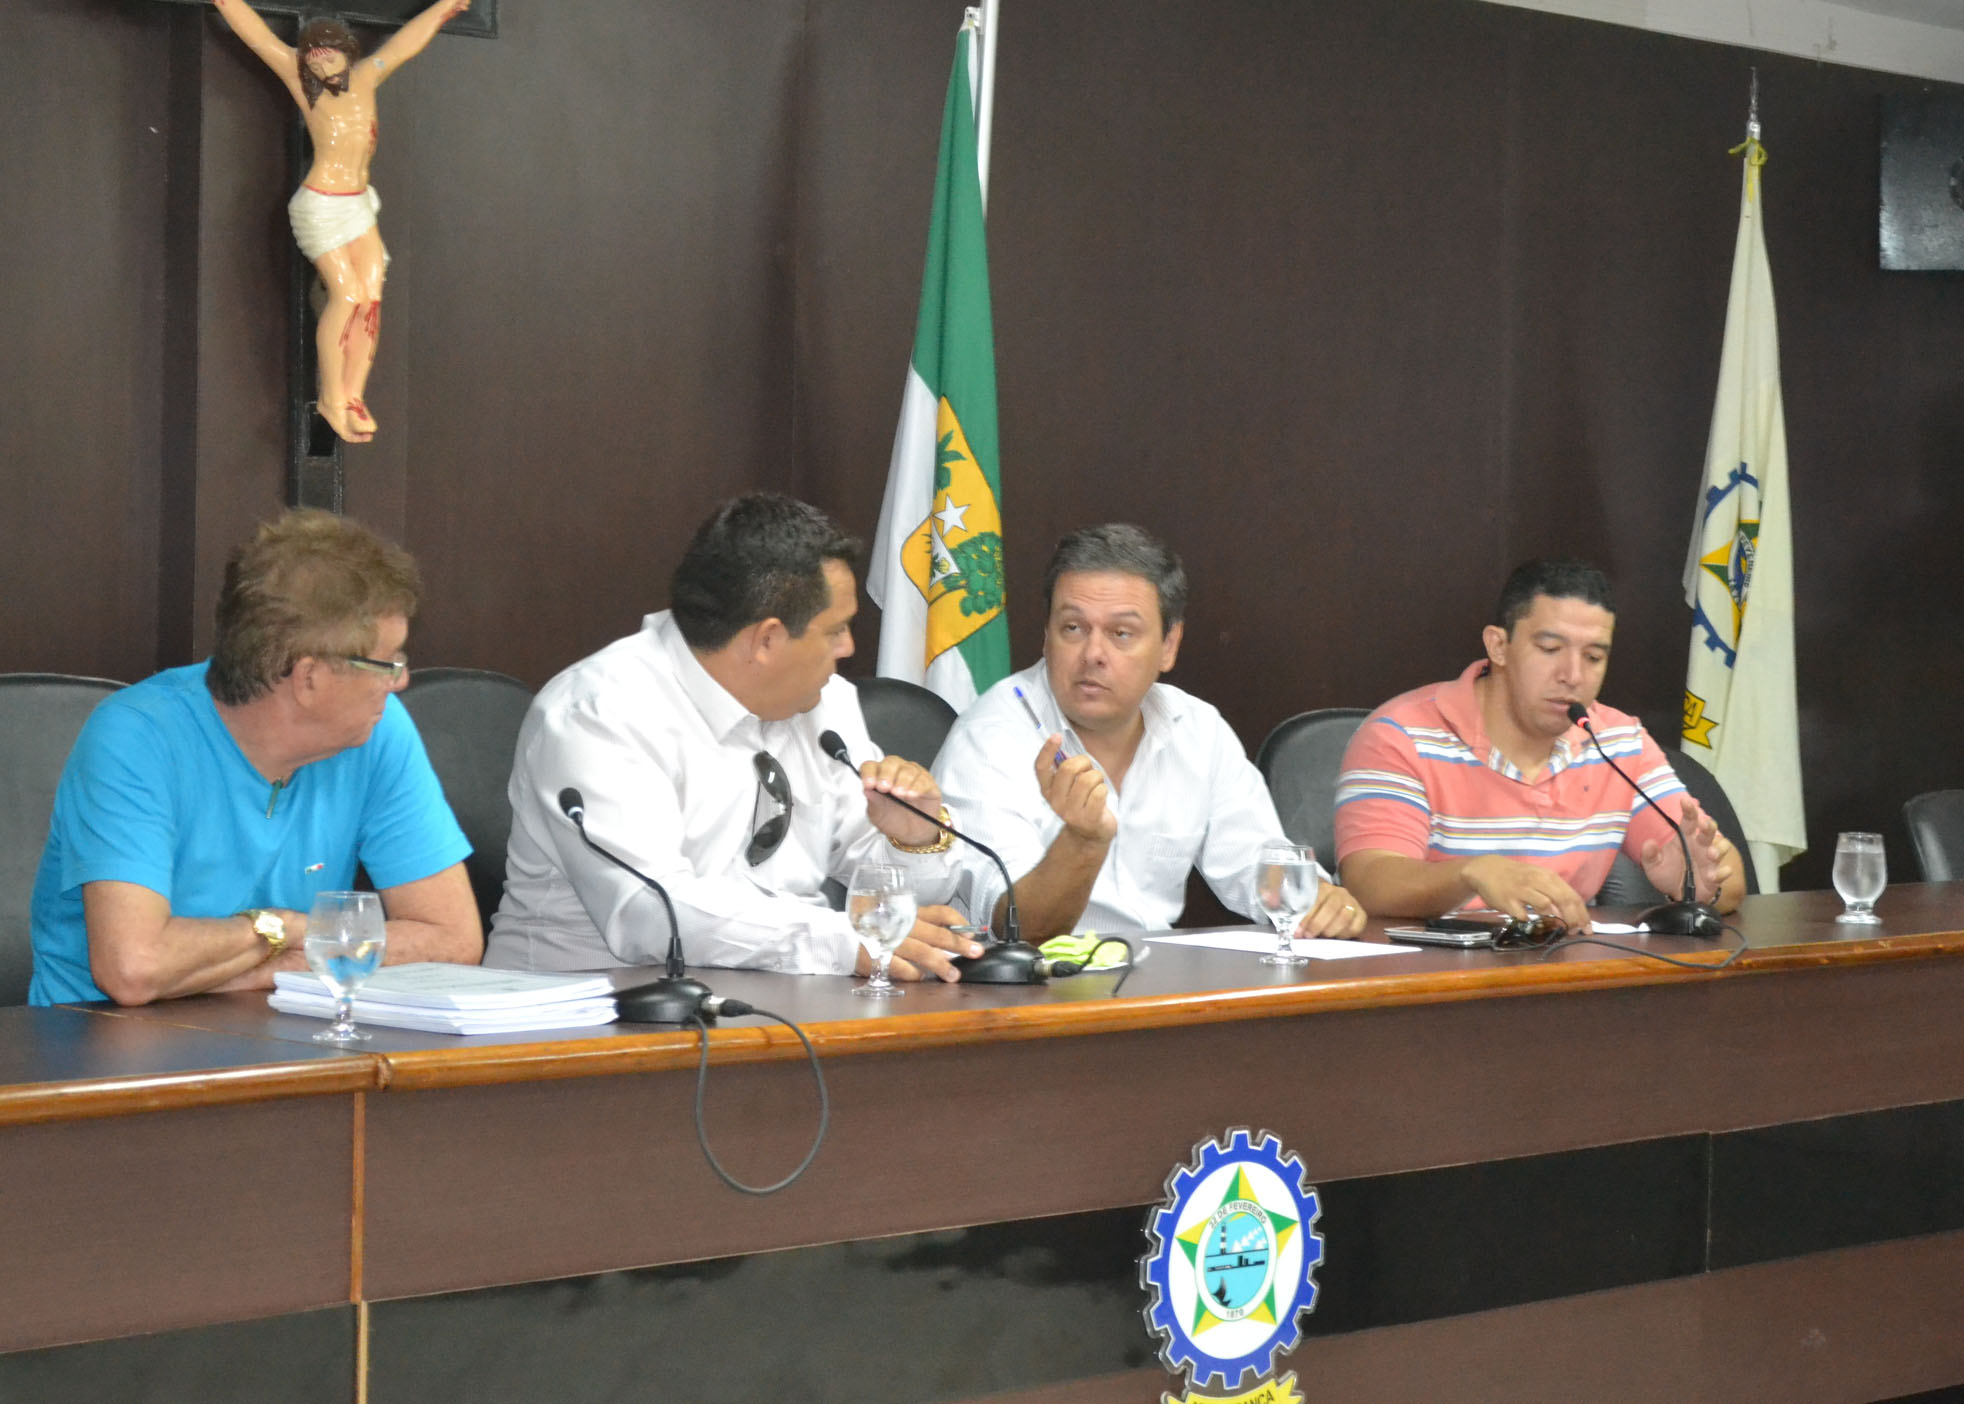 Vereadores Nazareno Lemos, Duarte Júnior e "João de Beguinho" (camisa listrada) formam a Comissão